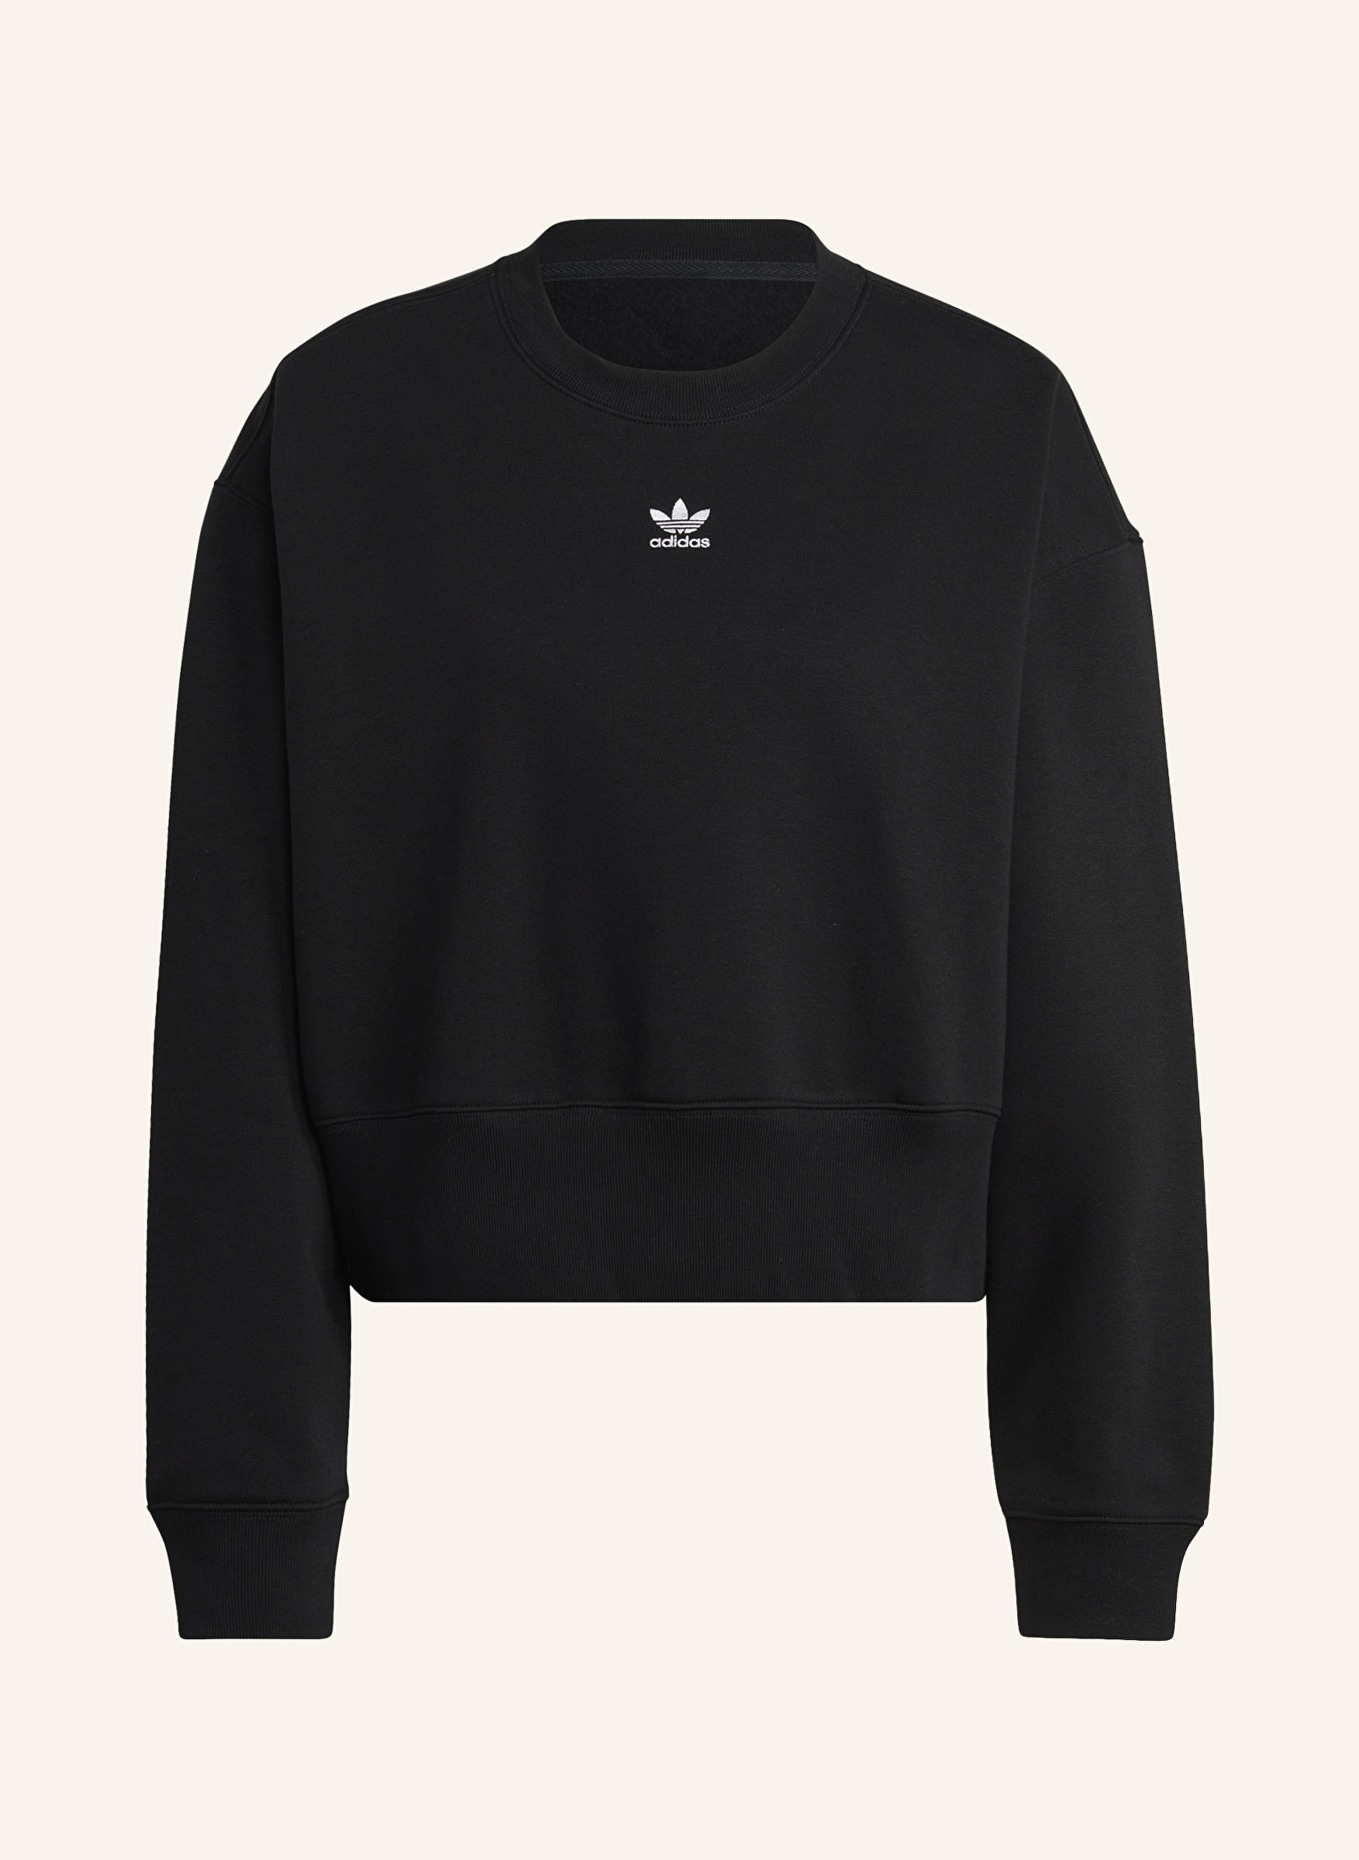 adidas Originals Sweatshirt, Farbe: SCHWARZ (Bild 1)